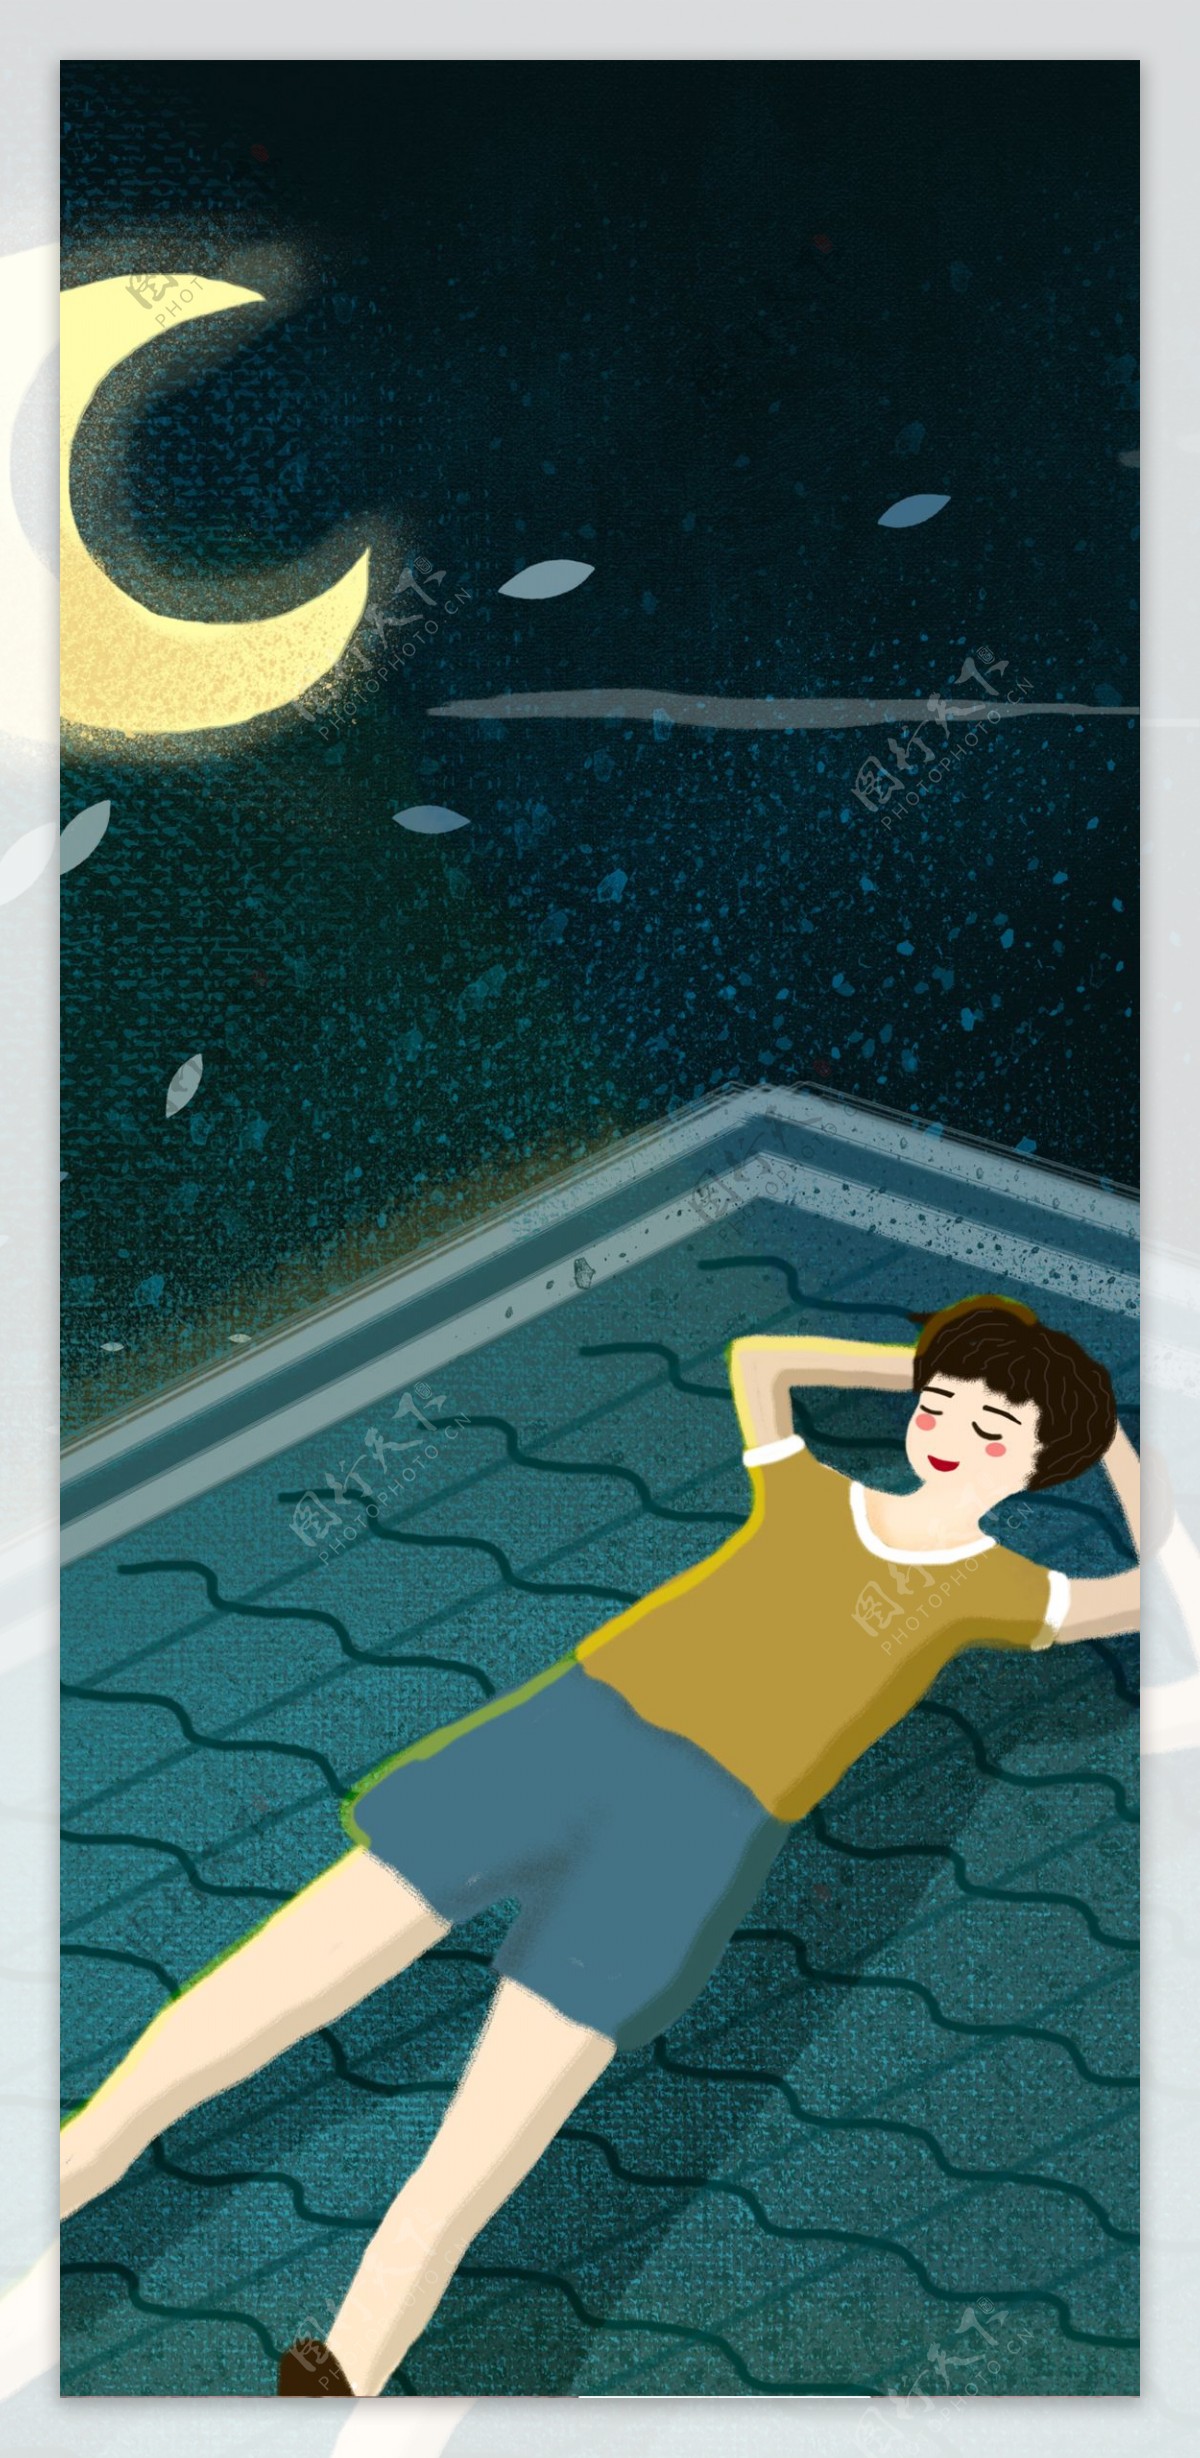 原创夏天夜晚屋顶乘凉的男孩商业插画